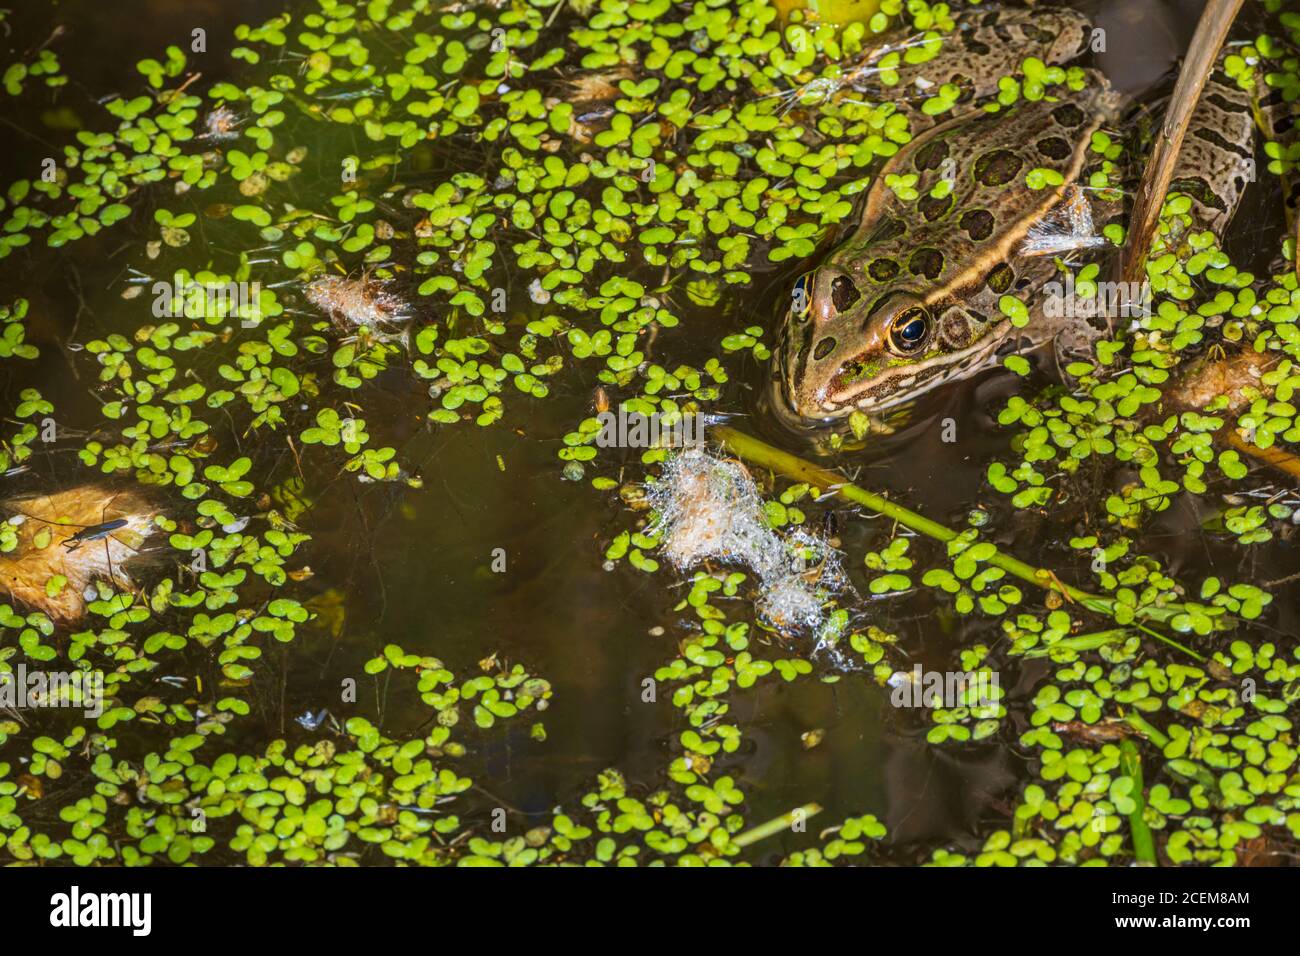 Pianure rana leopardo (Lithobates blairi) si nasconde in palude di cratello in anatra. Lo Strider dell'acqua si trova in basso a sinistra. Castle Rock Colorado USA. Foto Stock